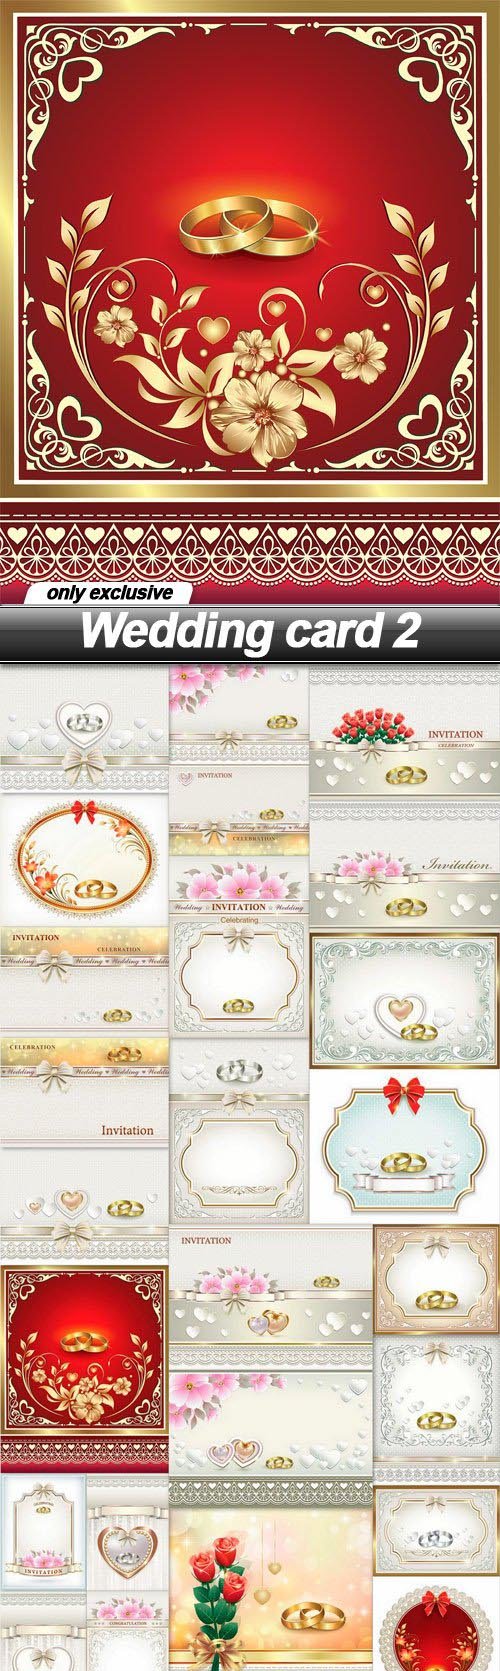 Wedding card 2 - 25 EPS